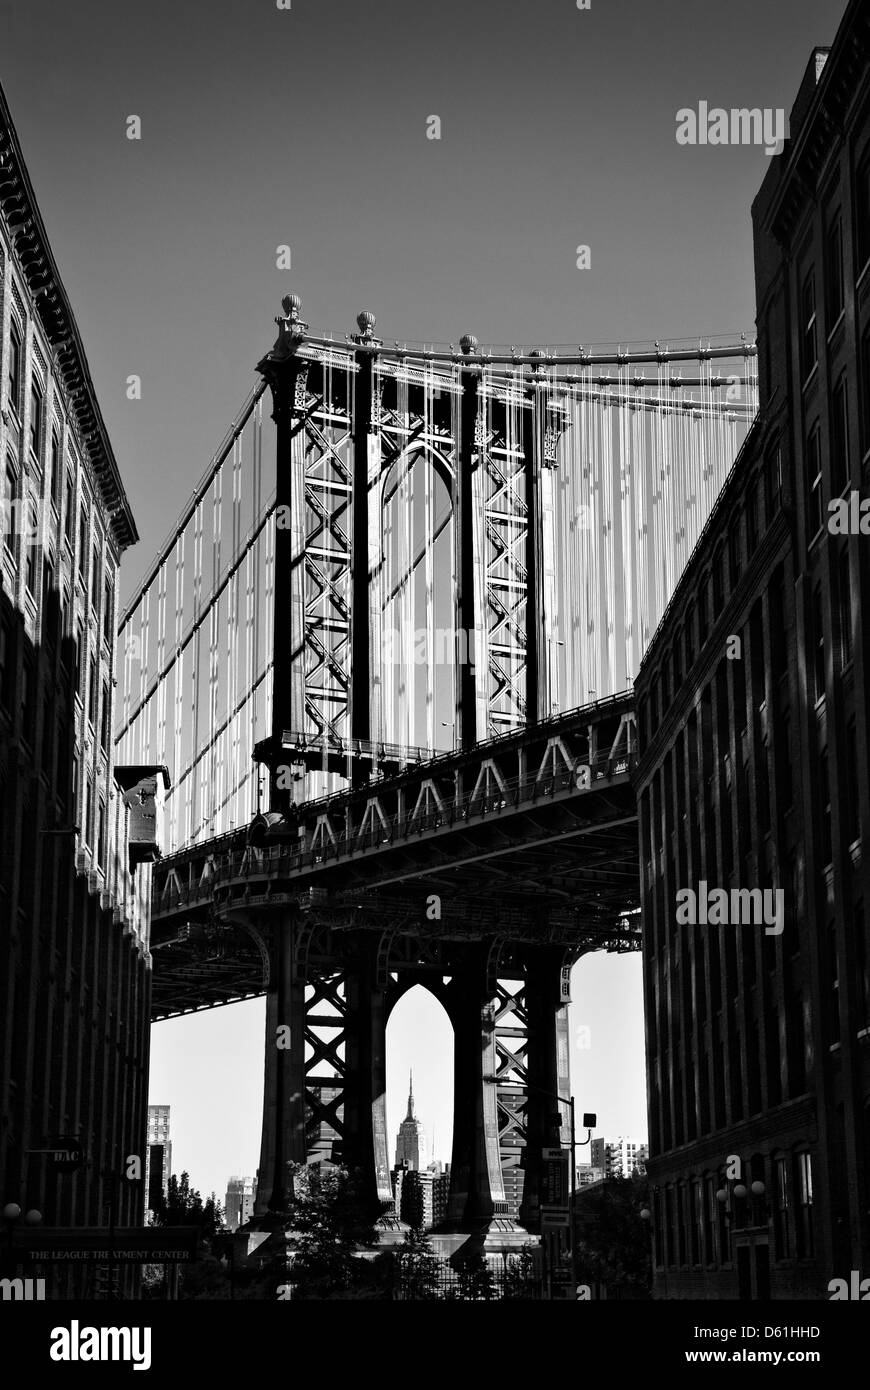 Manhattan Bridge, Blick von Brooklyn Heights, New York, Vereinigte Staaten von Amerika - Bild von öffentlichem Grund Stockfoto